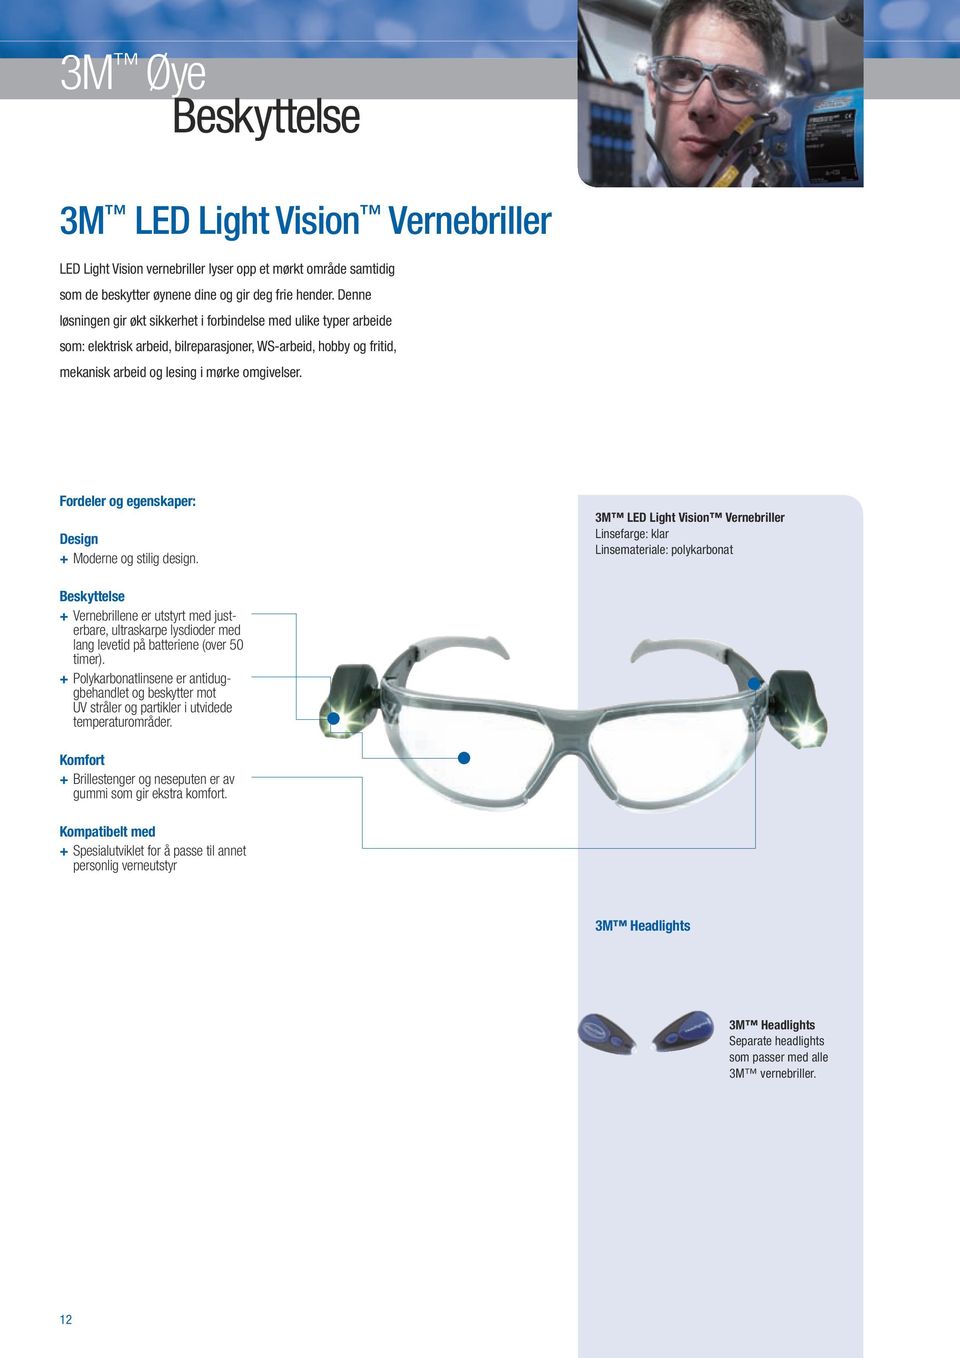 + Moderne og stilig design. 3M LED Light Vision Vernebriller + Vernebrillene er utstyrt med justerbare, ultraskarpe lysdioder med lang levetid på batteriene (over 50 timer).